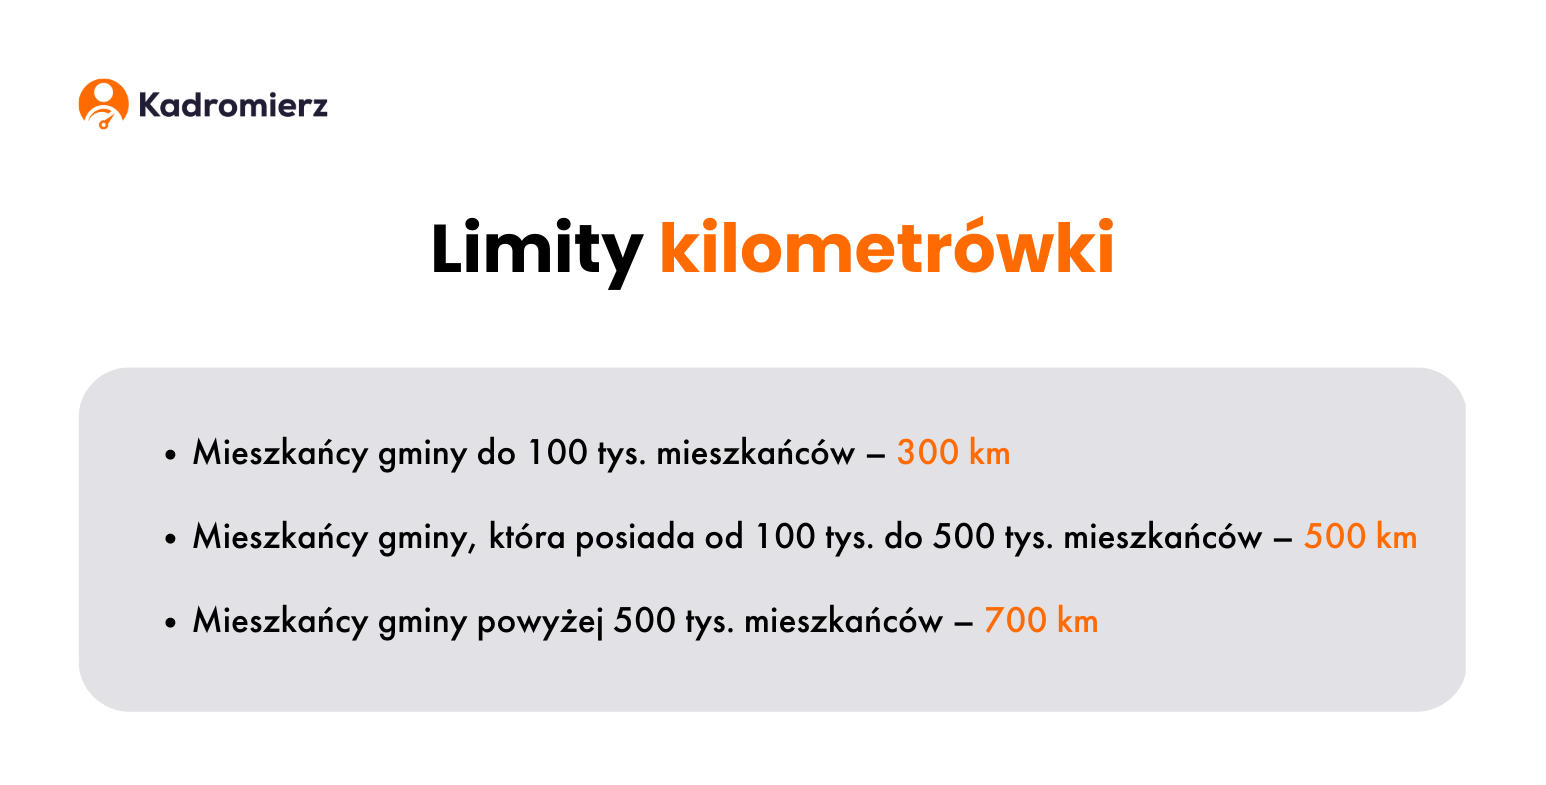 Grafika blogowa przedstawiająca limity kilometrówki